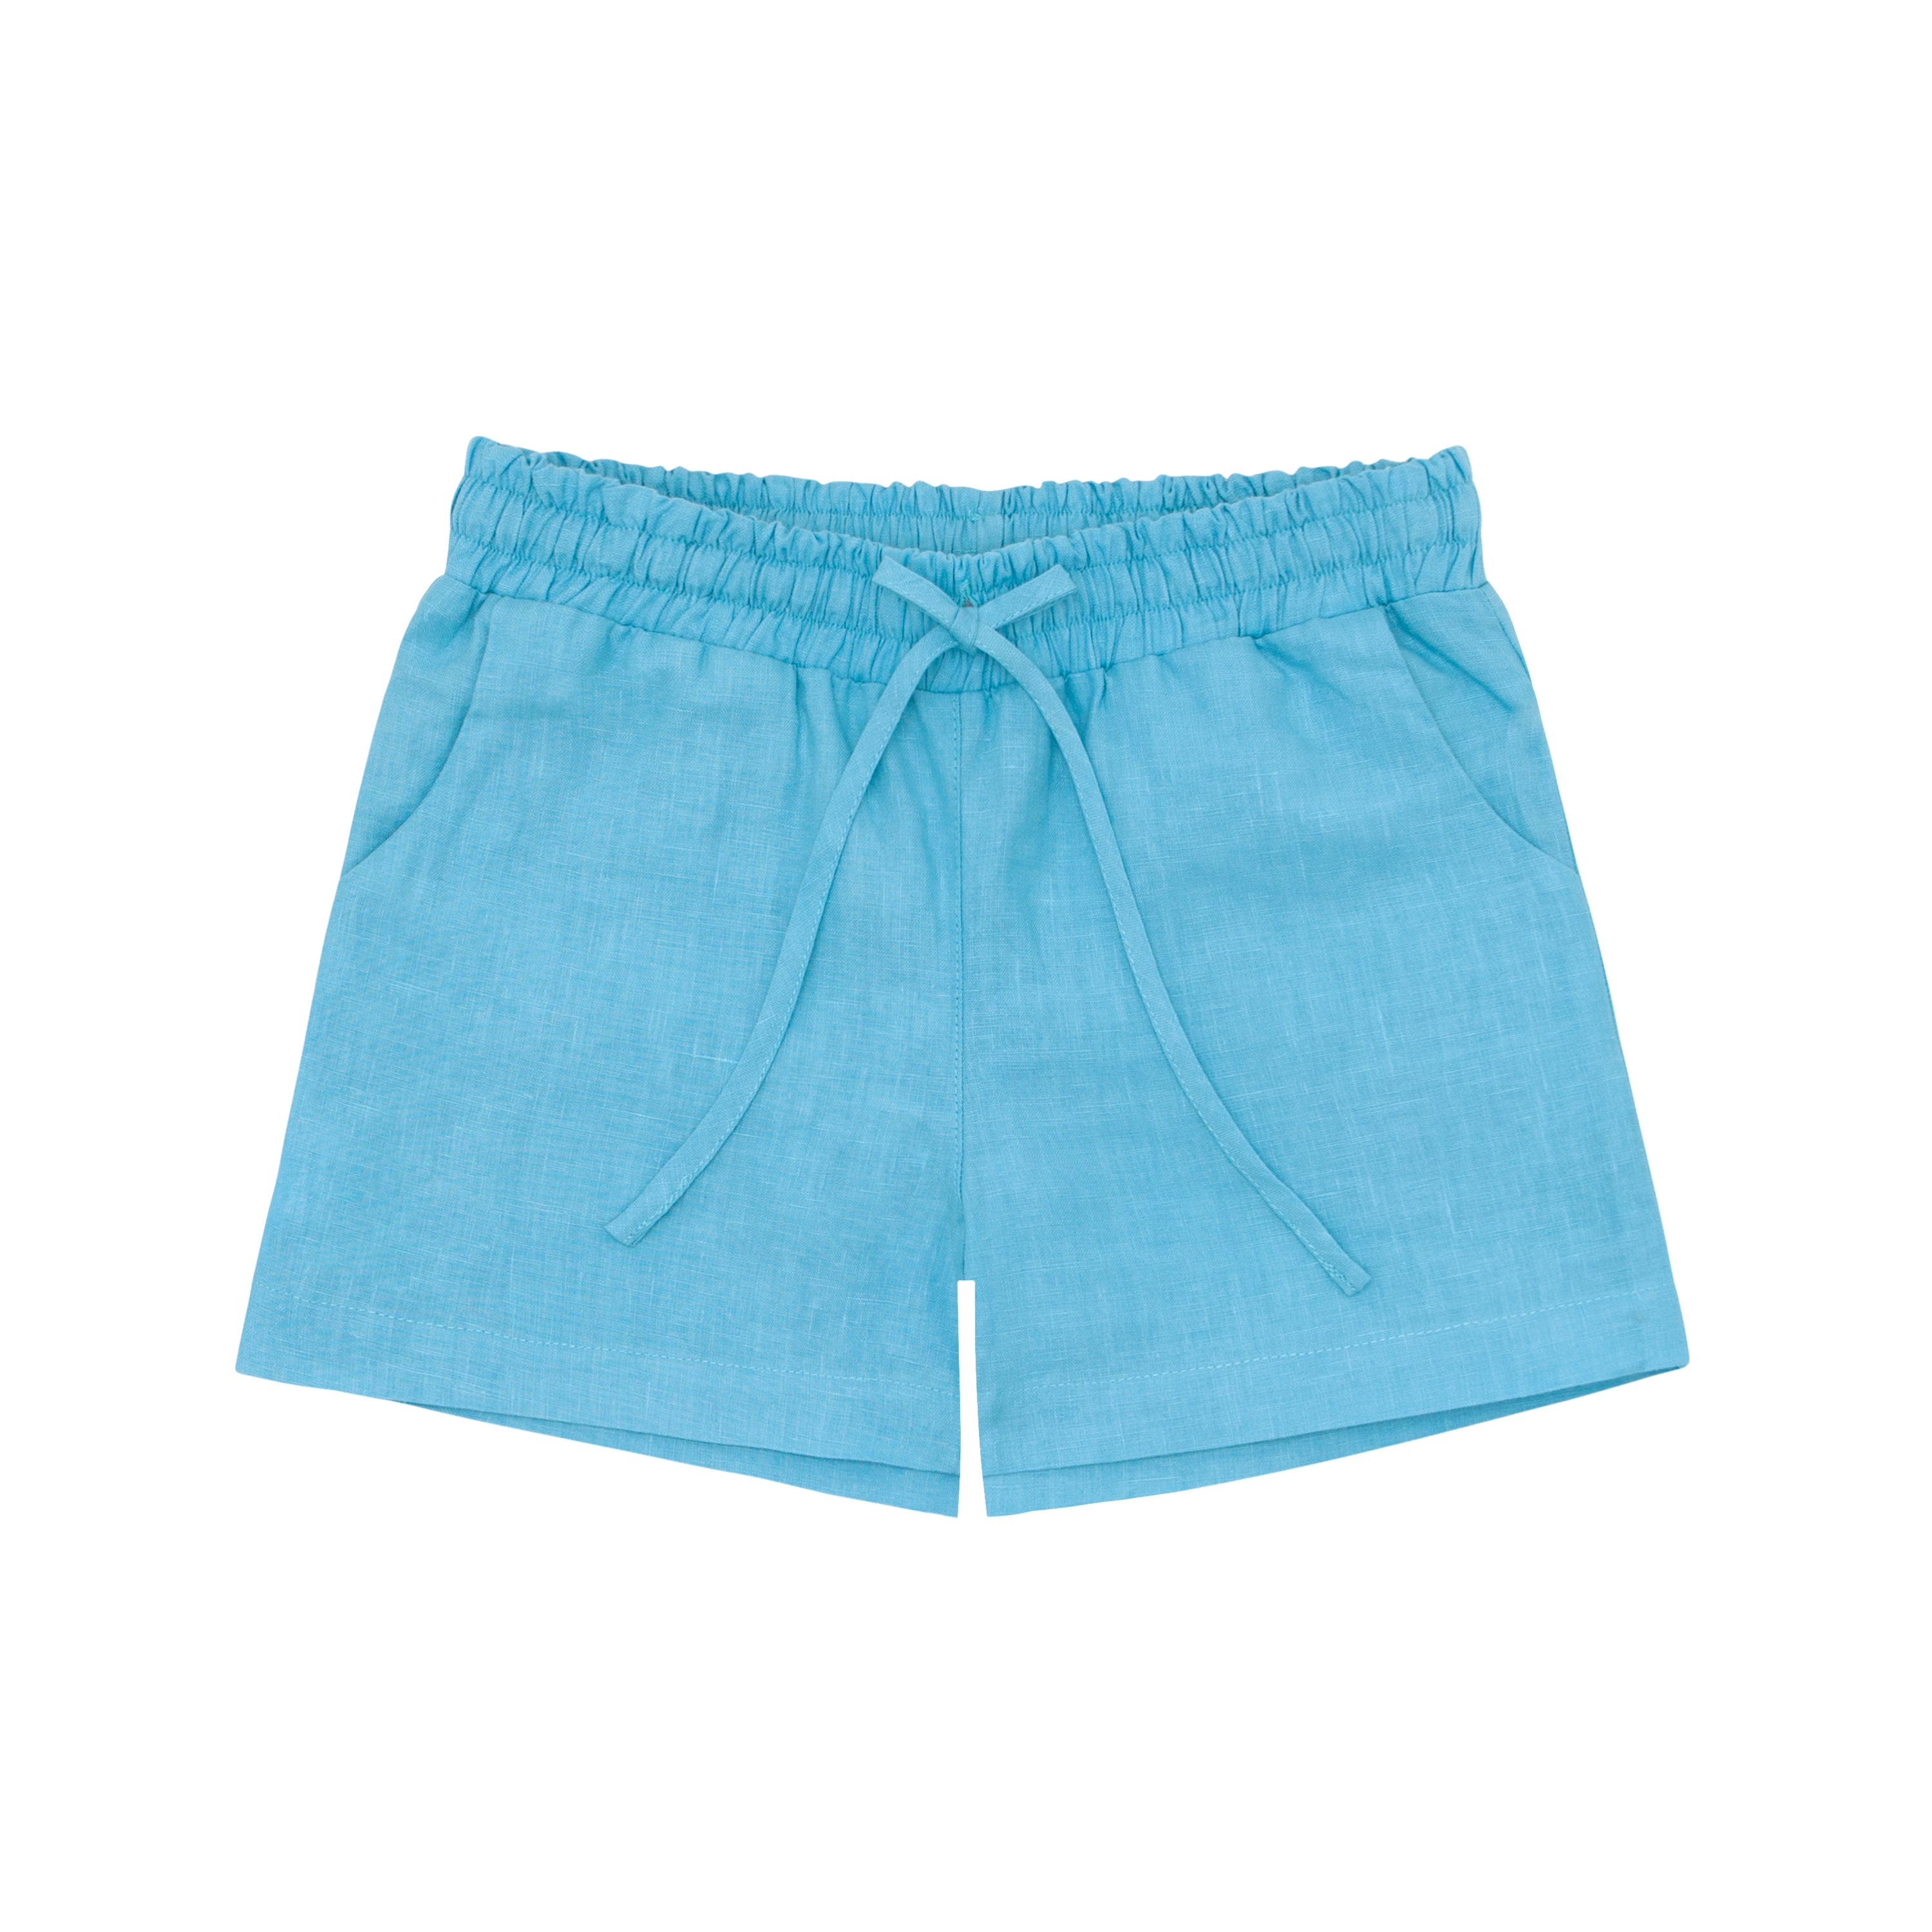 Fanm Mon x Minnow Boy's Linen Shorts by Fanm Mon